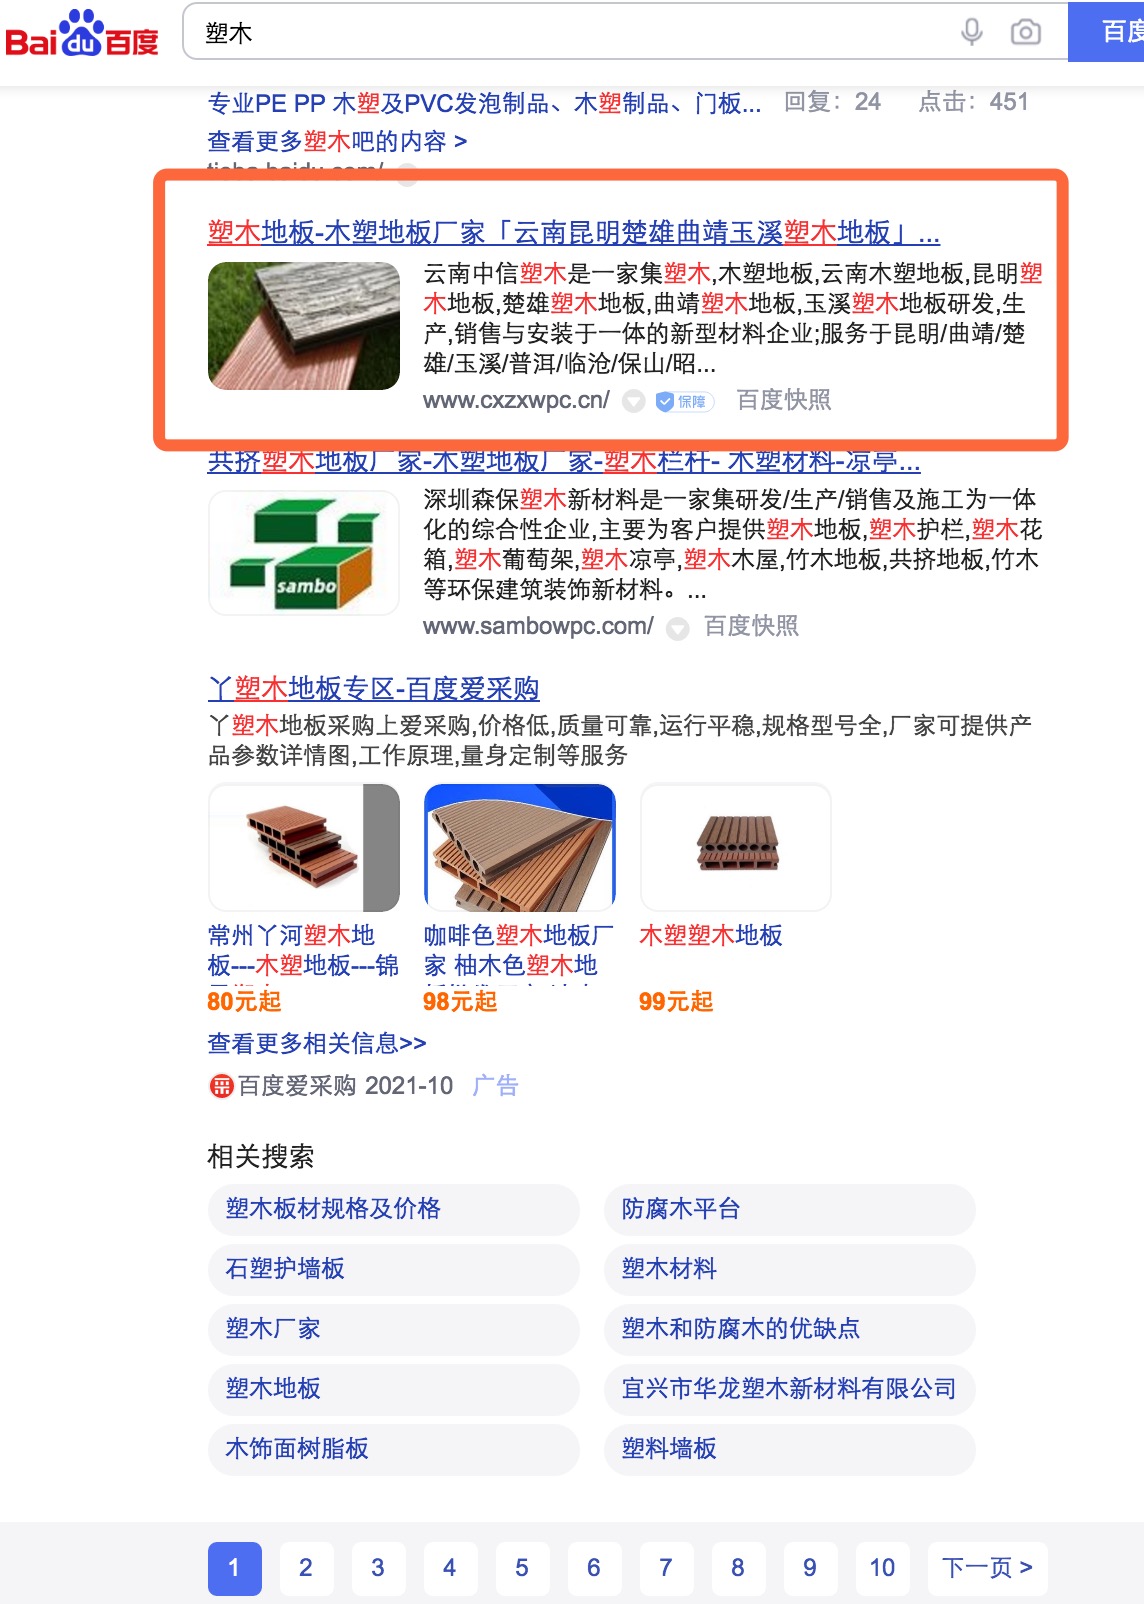 商洛塑木-塑木地板产品大词云南省16个地级市排名全覆盖